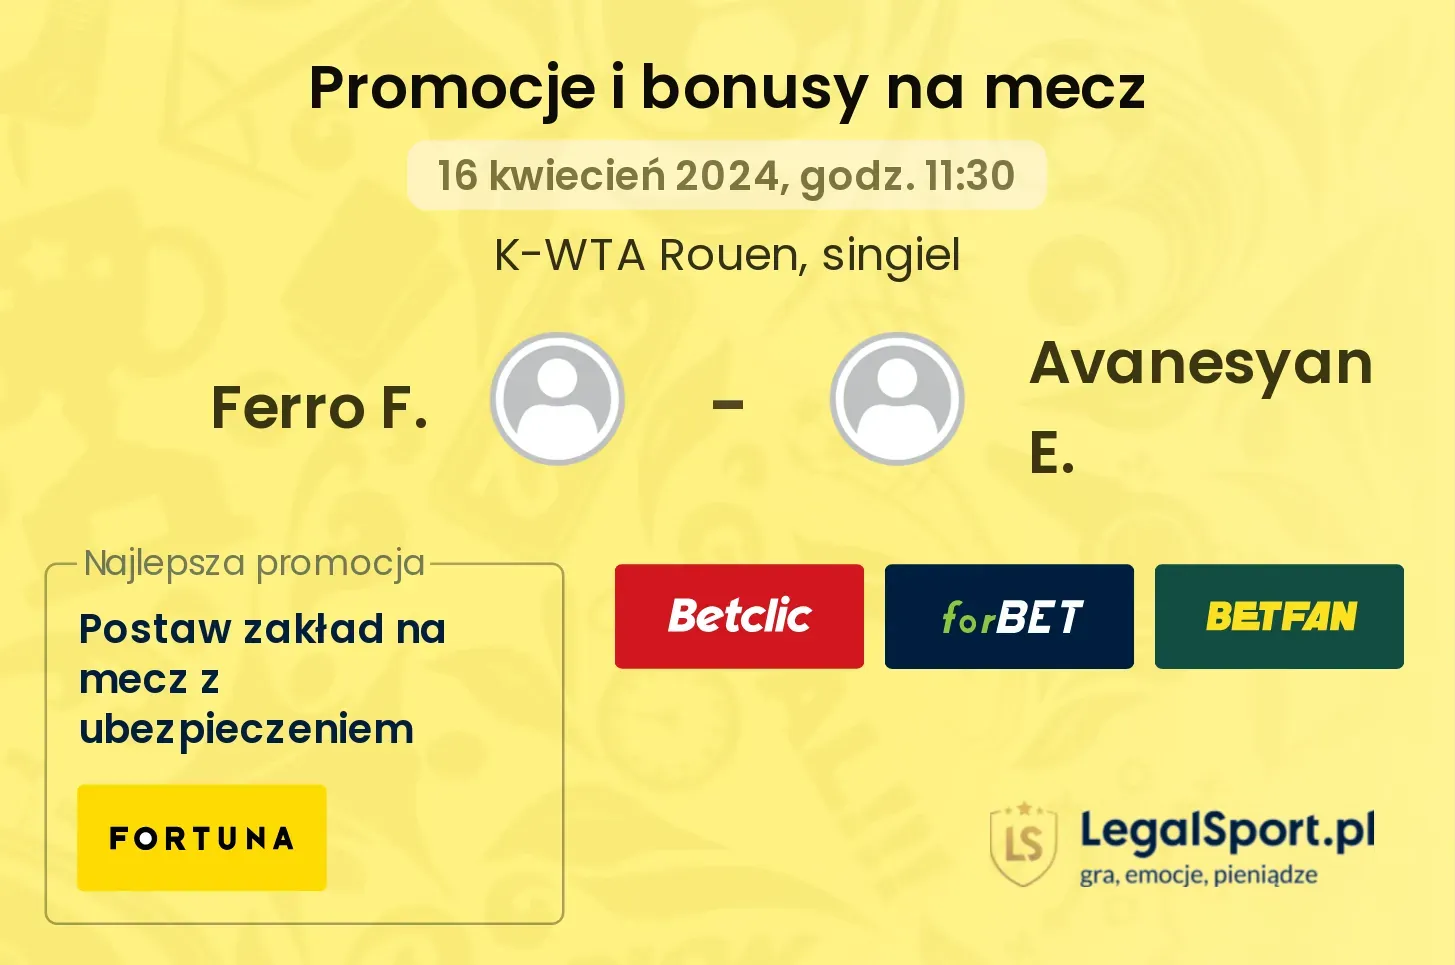 Ferro F. - Avanesyan E. promocje bonusy na mecz